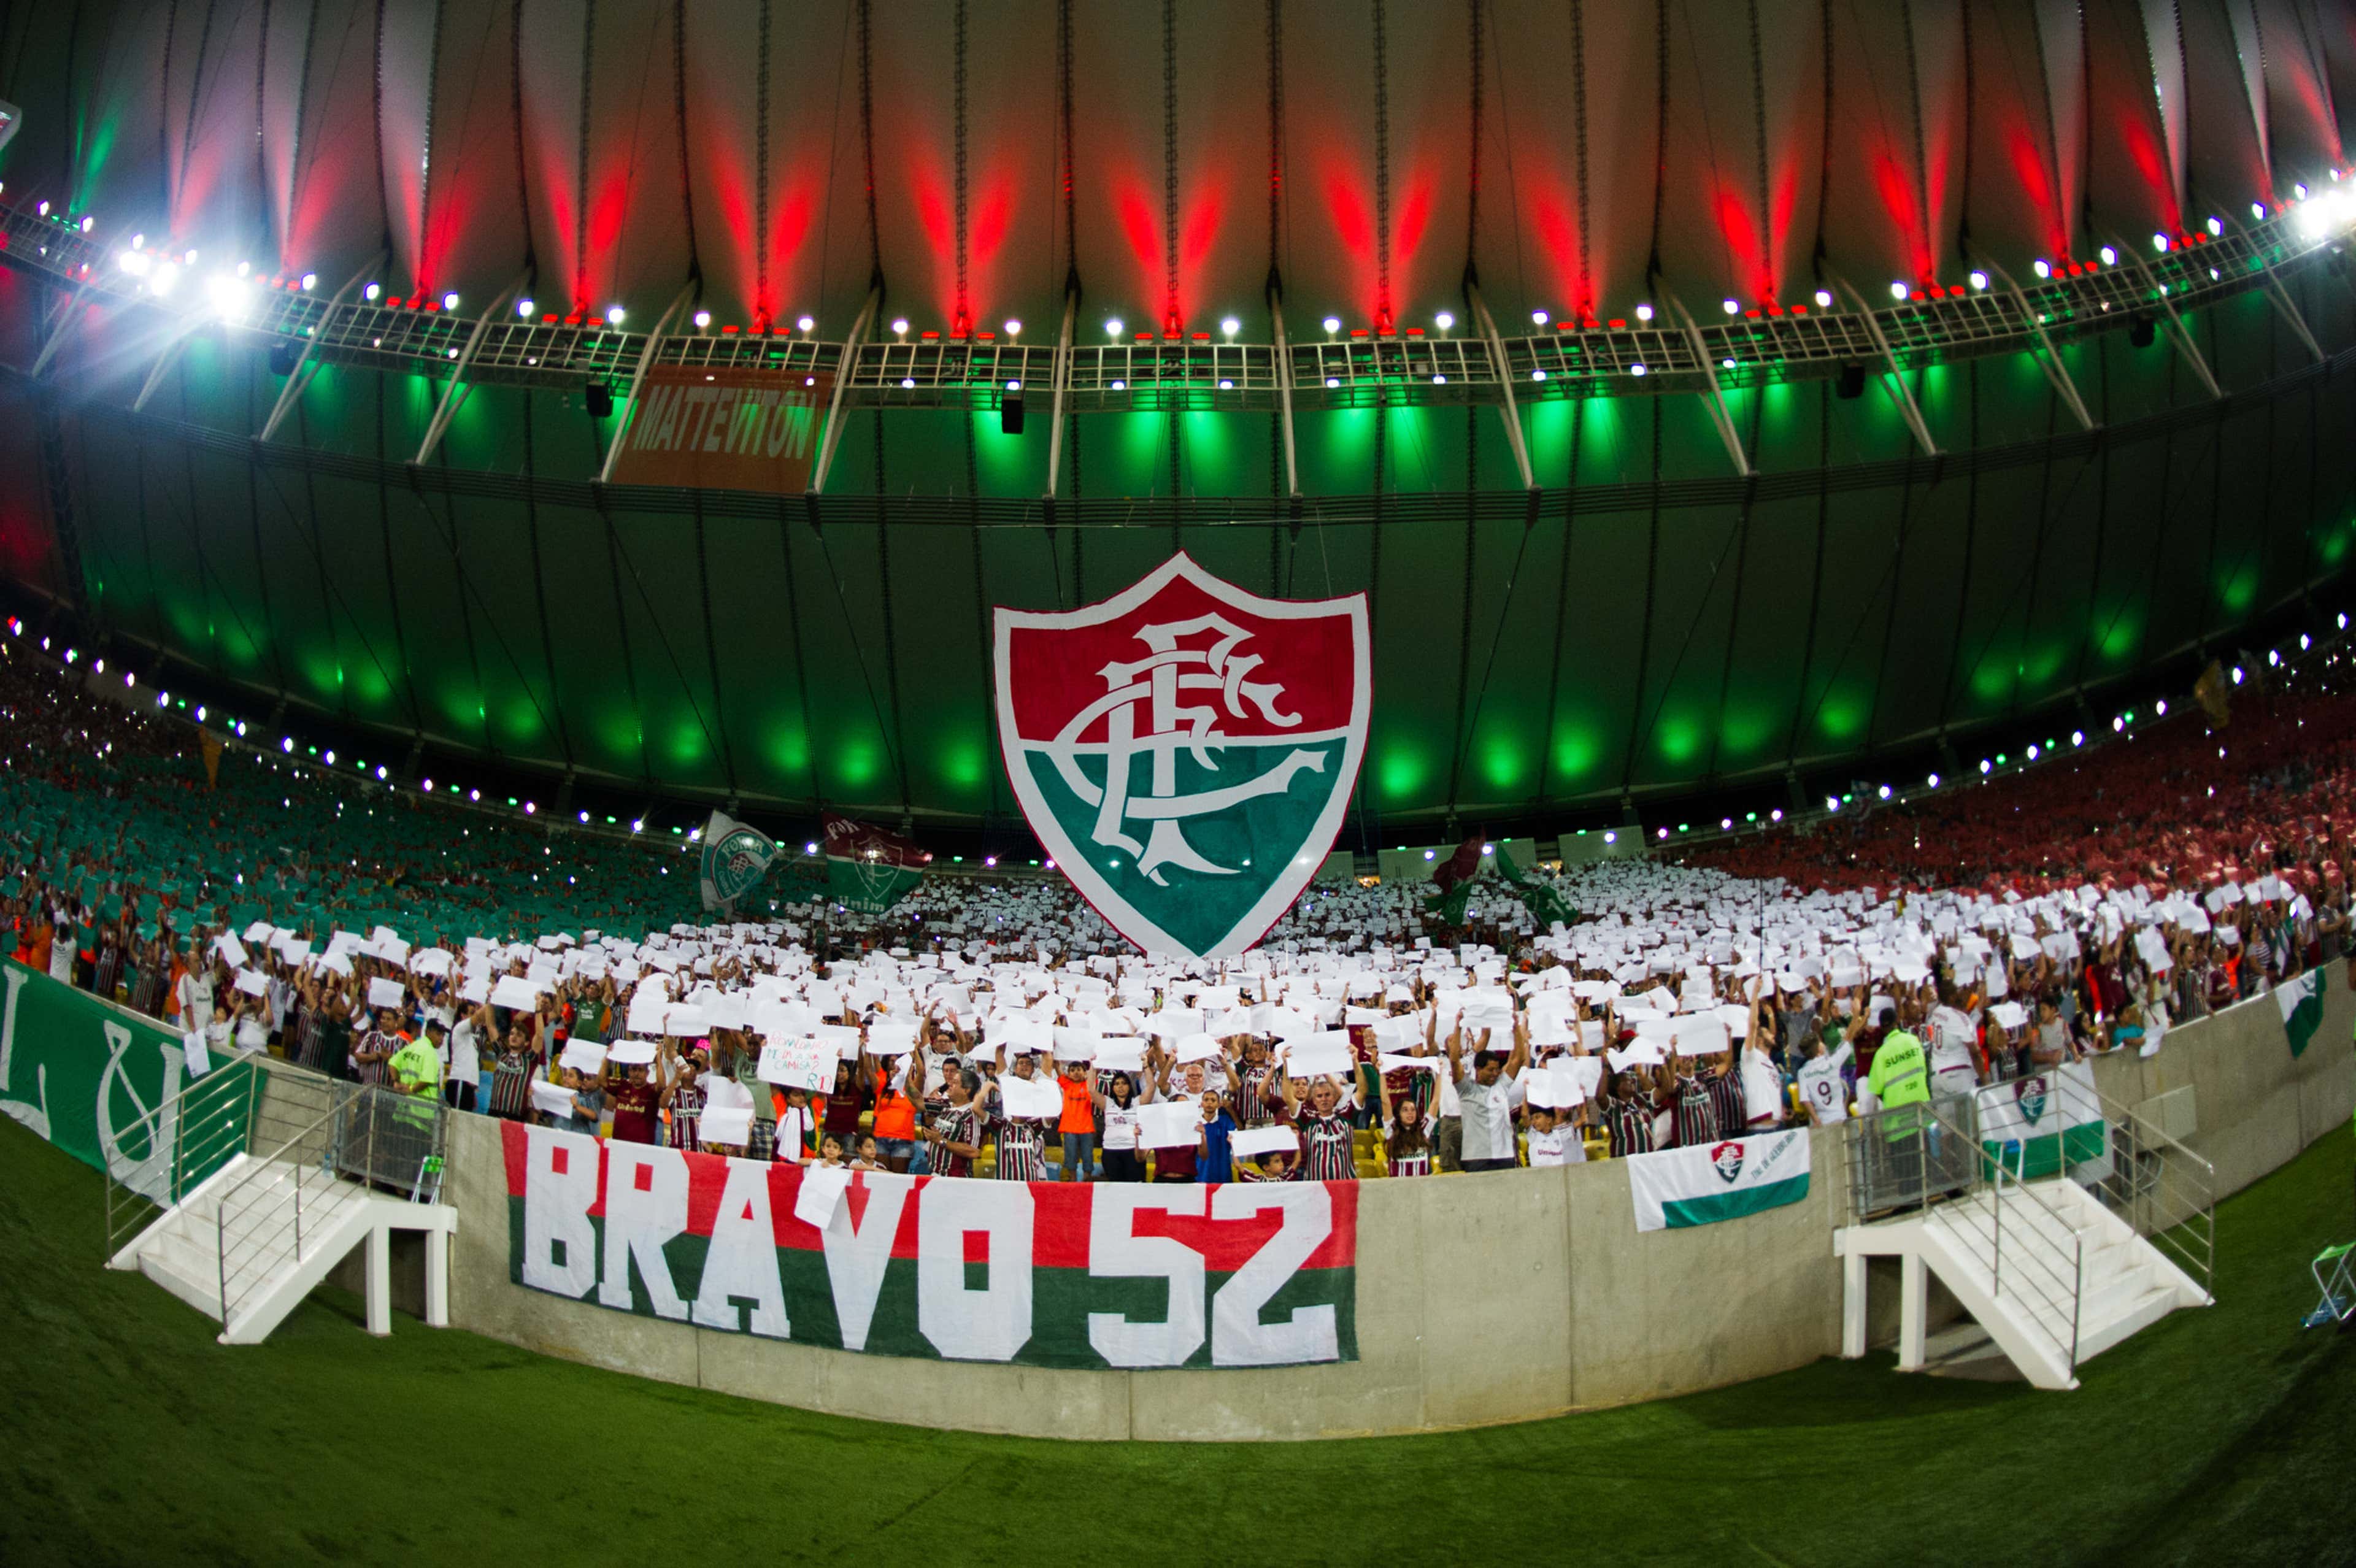 Fluminense e Fortaleza fazem jogo 'morno' e ficam no empate no Maracanã -  04/12/2019 - UOL Esporte